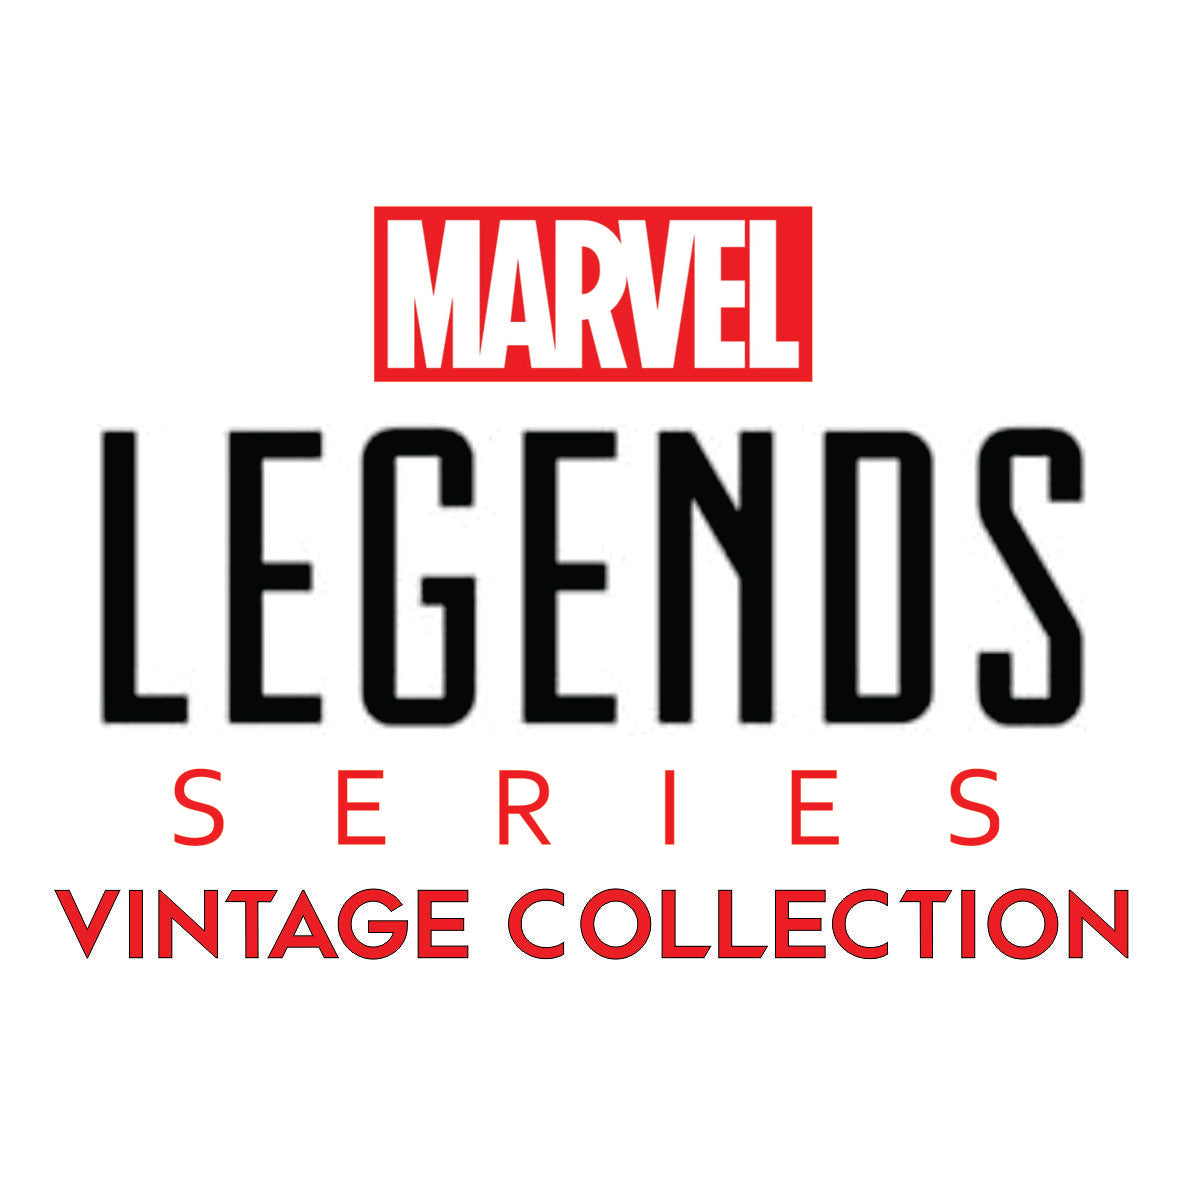 Marvel Legends Vintage Collection